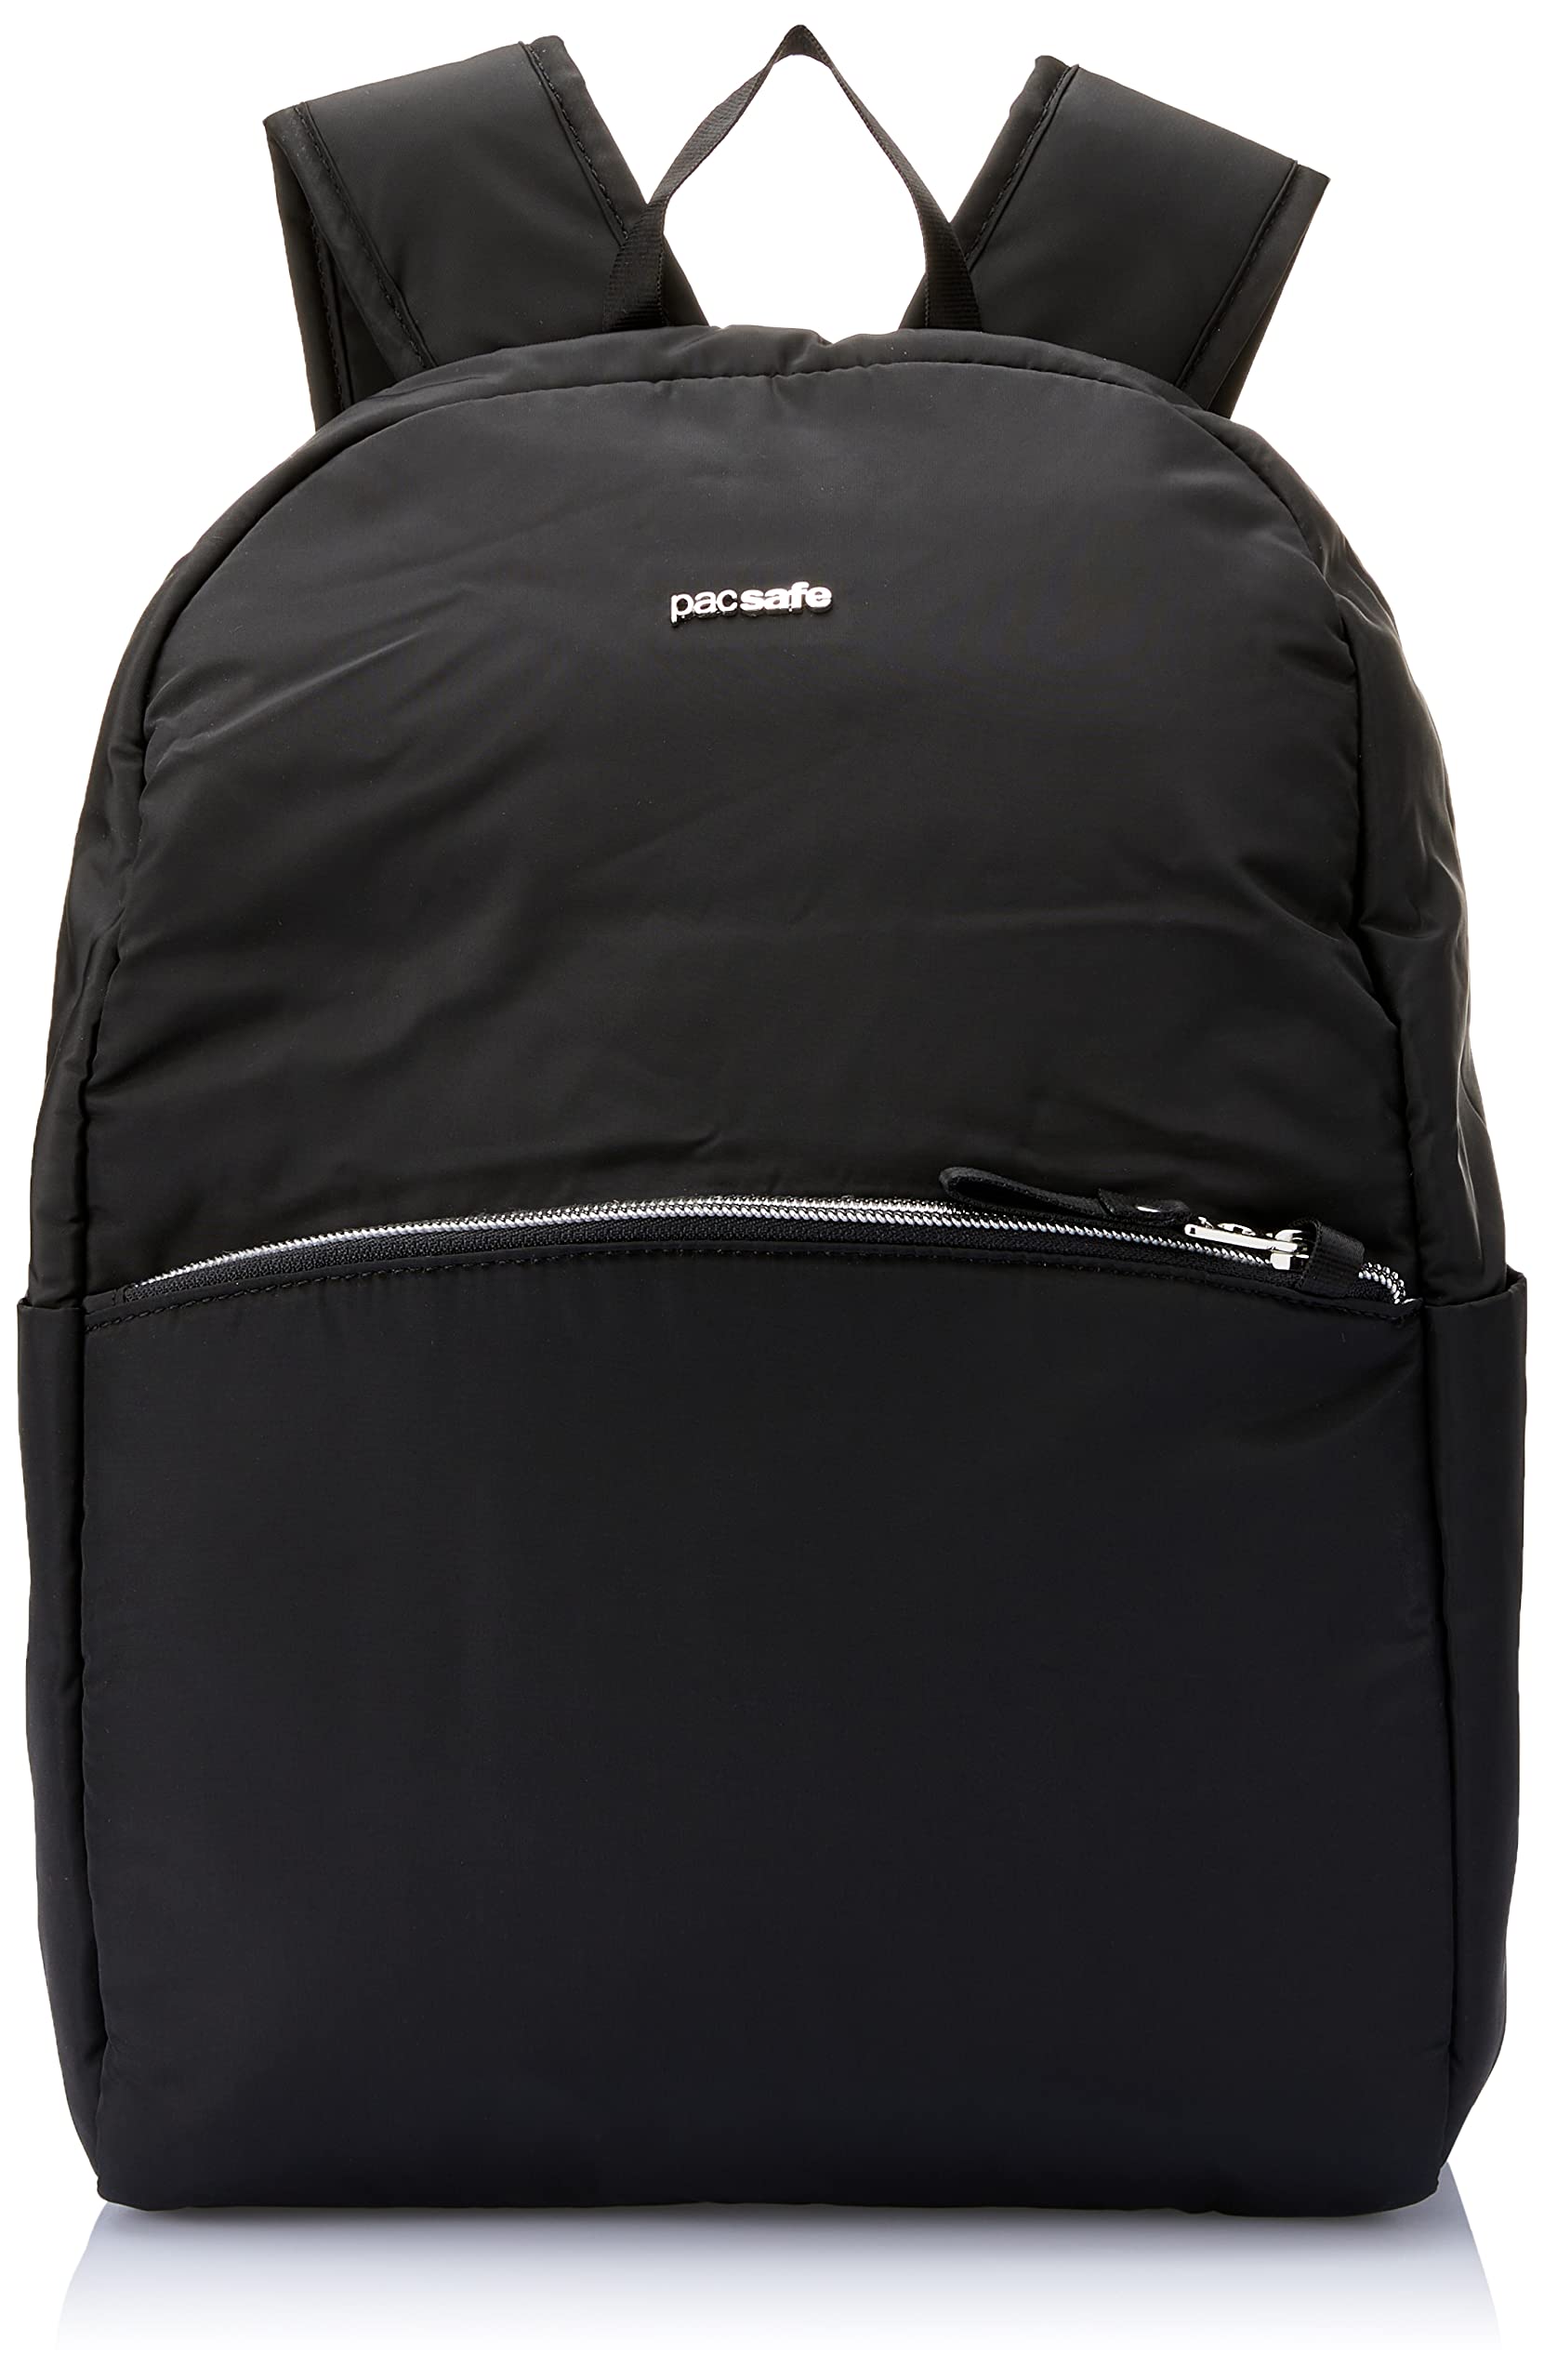 Pacsafe Stylesafe Backpack, großer Daypack für Damen, Anti-Diebstahl Tasche, Schulterrucksack mit Diebstahlschutz, Sicherheits-Features - 12 Liter, Uni, Black/Schwarz